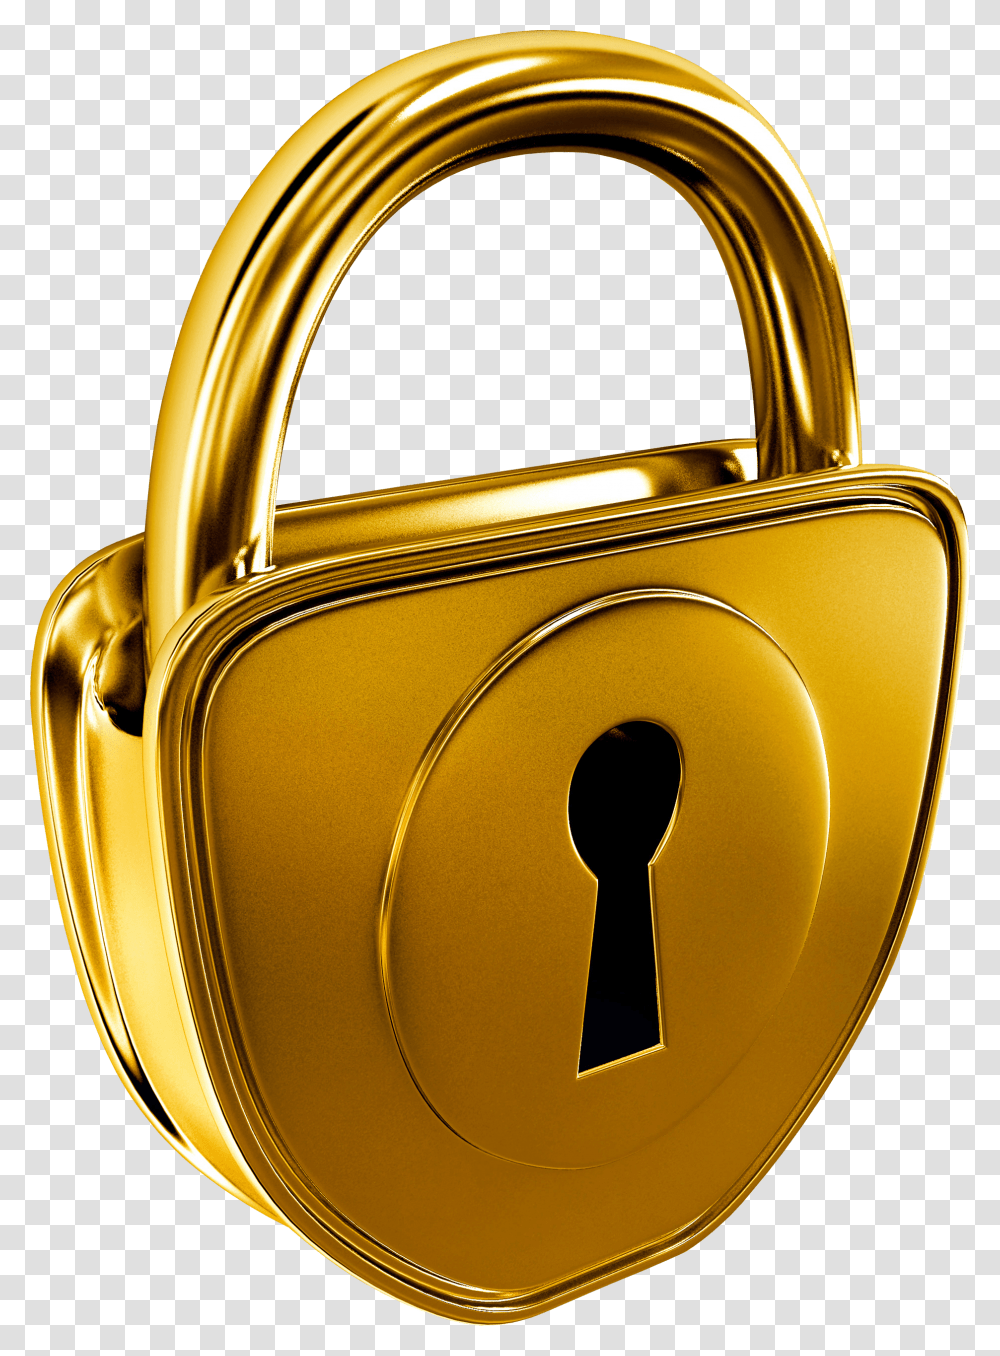 Gold Padlock Golden Lock, Bag, Security, Sink Faucet, Purse Transparent Png